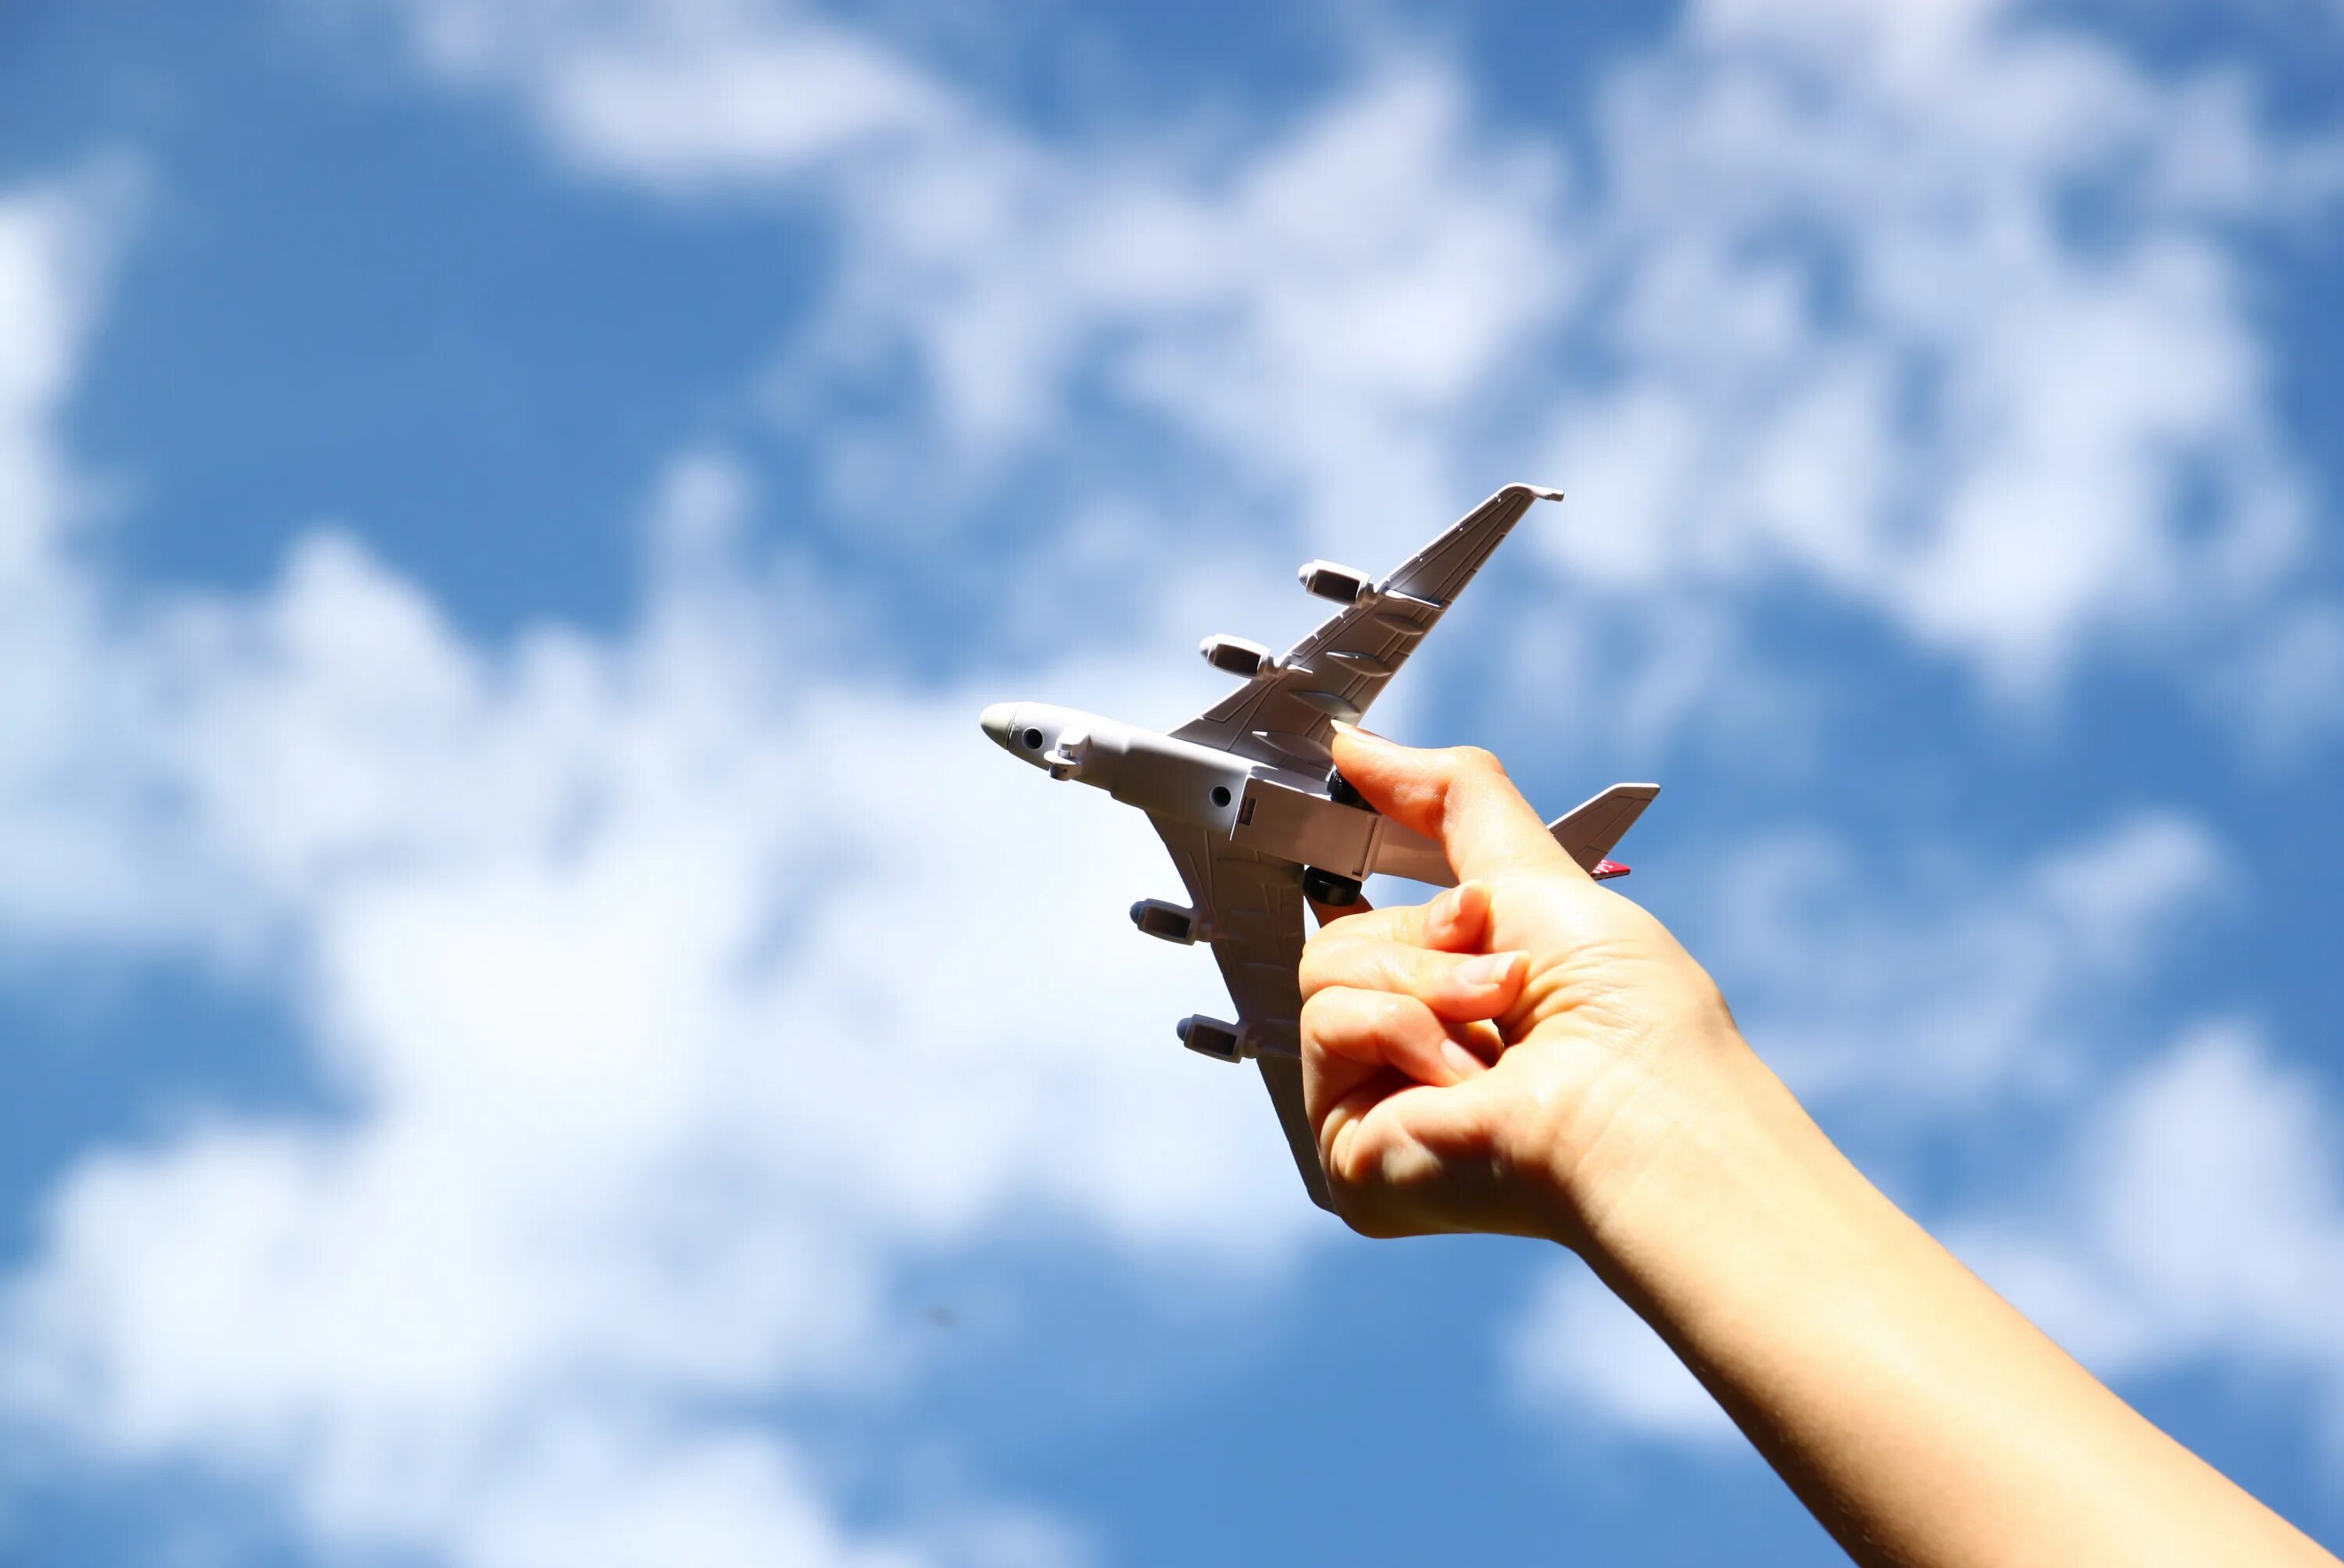 Flying plane 1 4. Игрушечный самолет в руках. Fly a plane. Фото самолёта в небе игрушечного. Hand plane.